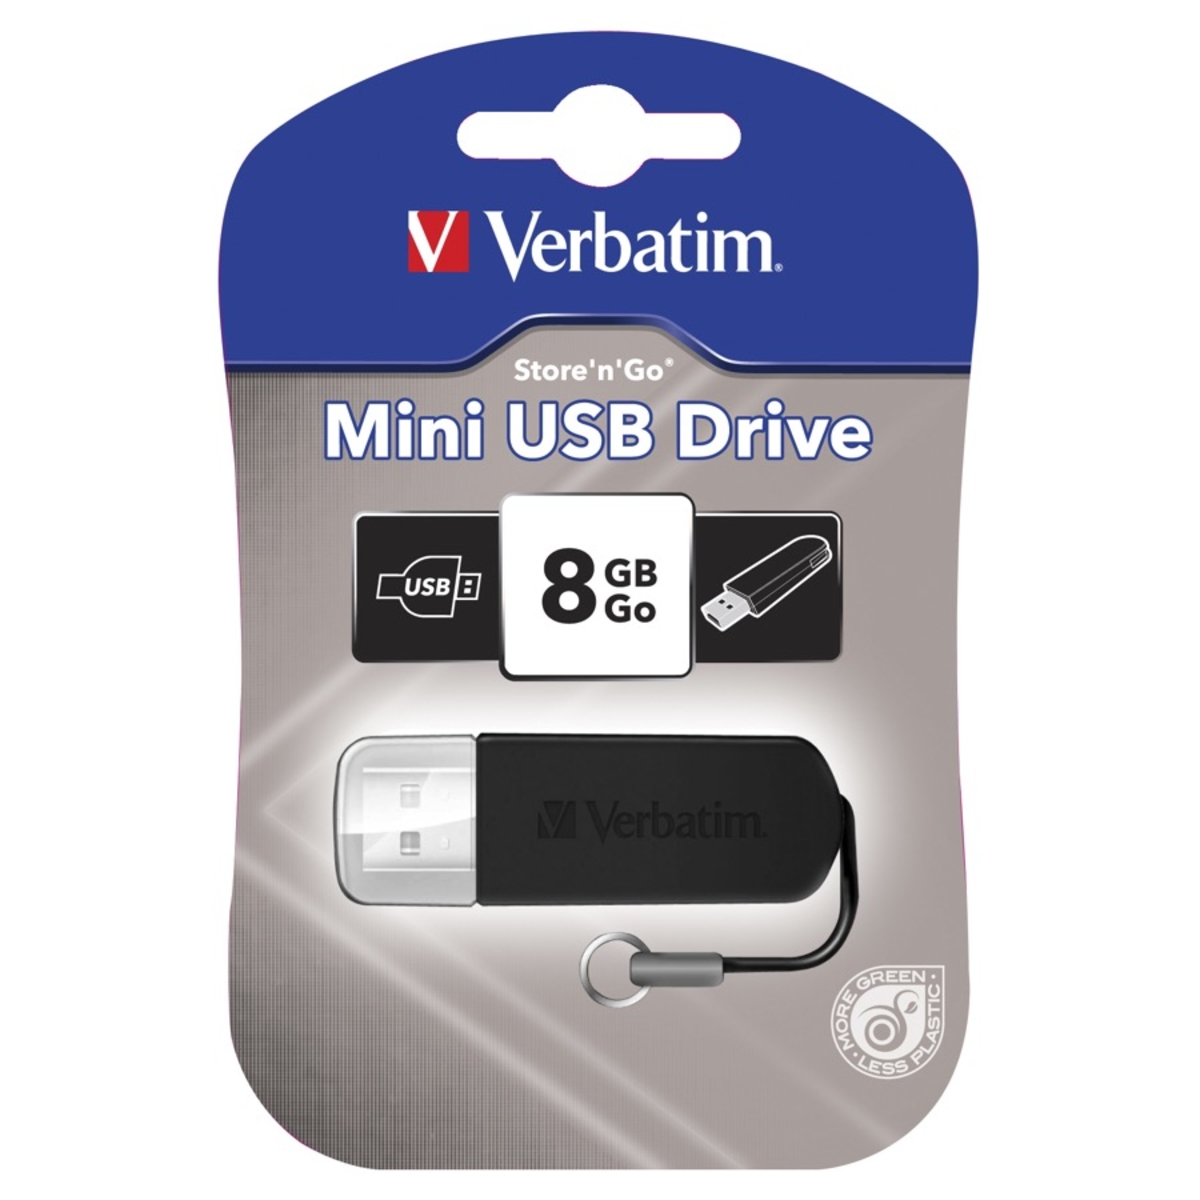 Verbatim Store'n'Go Mini USB Drive - 8GB, Black